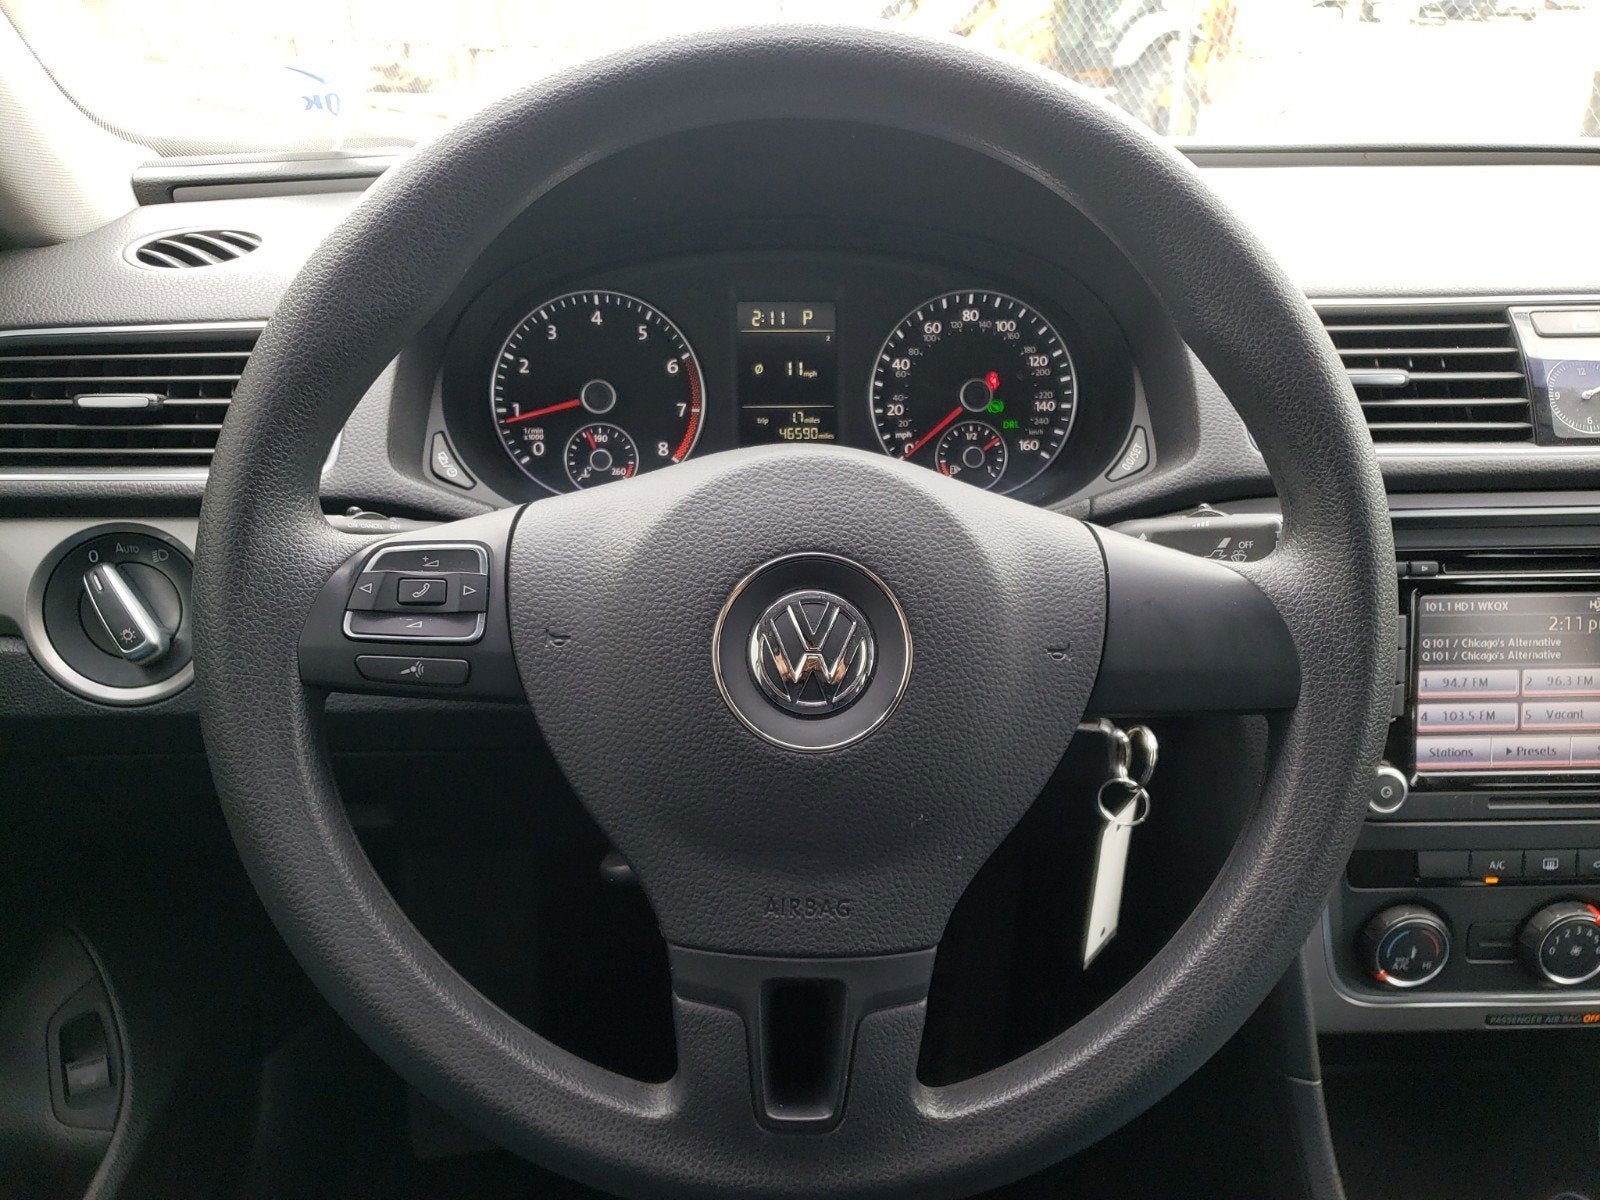 2015 Volkswagen Passat 1.8T Limited Edition